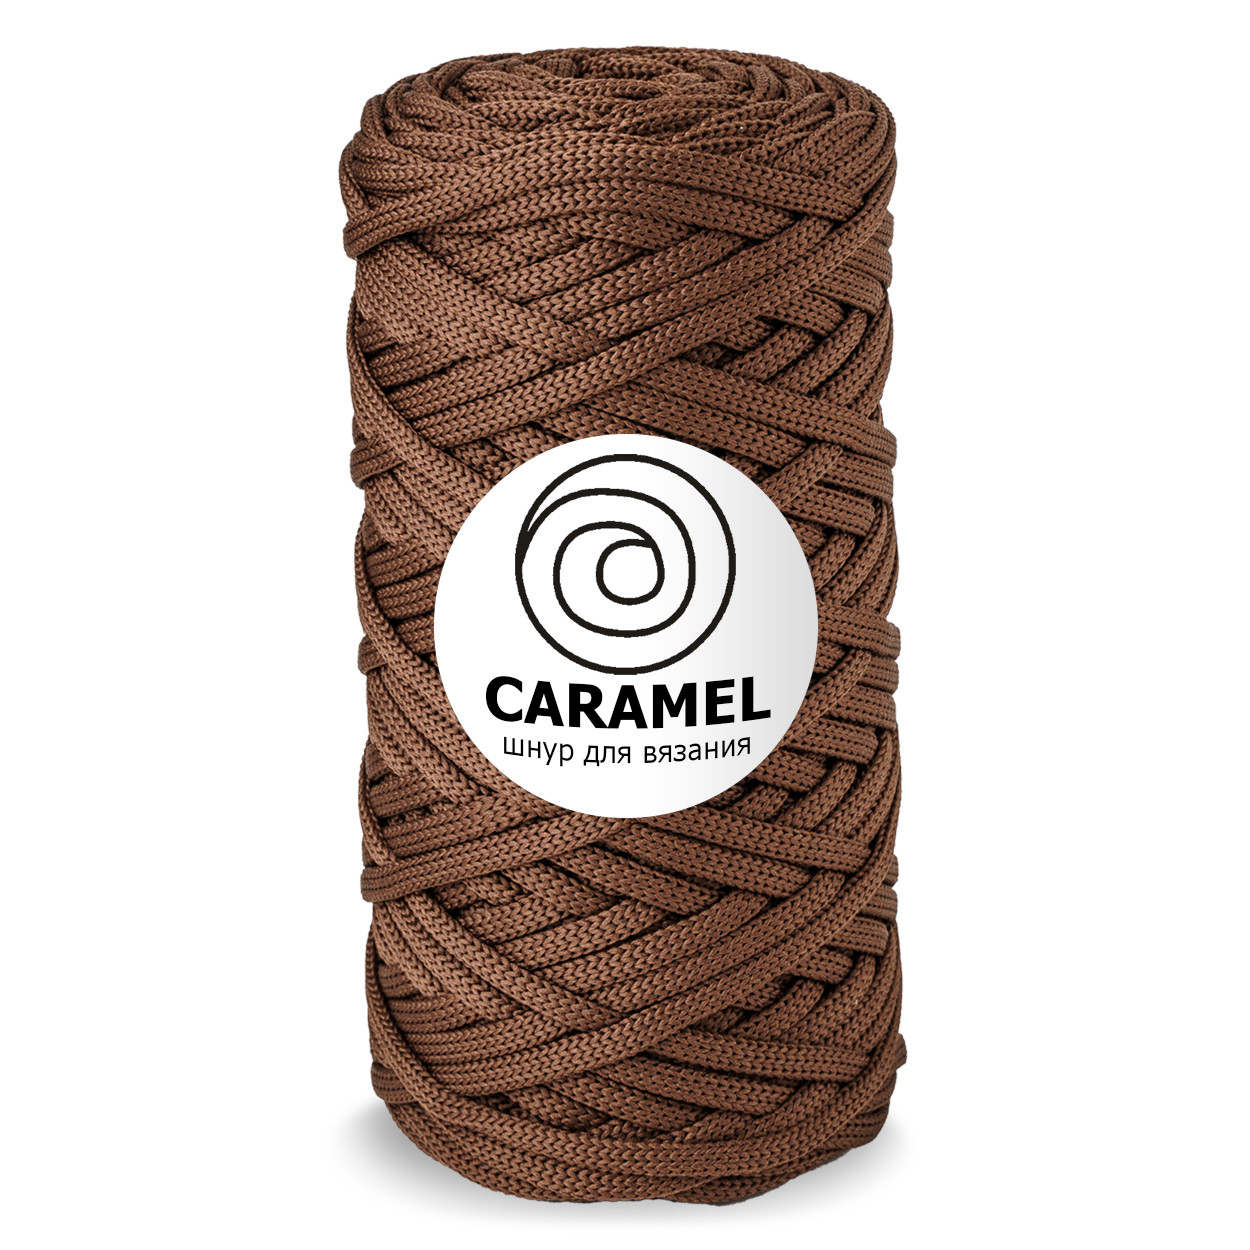 Шнур для вязания полиэфирный Caramel 5 мм, цвет орех